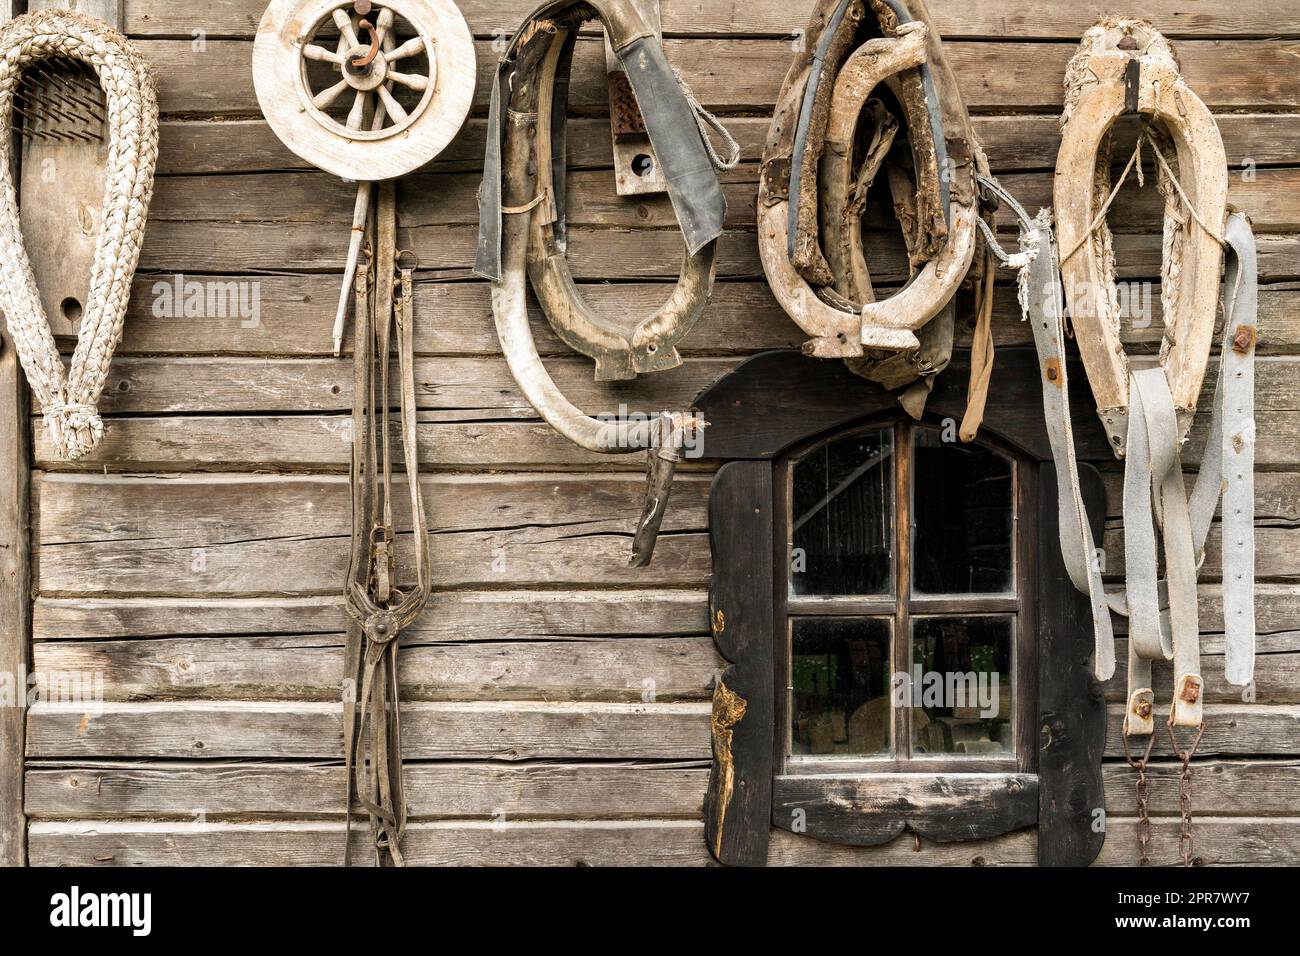 Vieux mur de maison avec des outils et des trucs anciens Banque D'Images